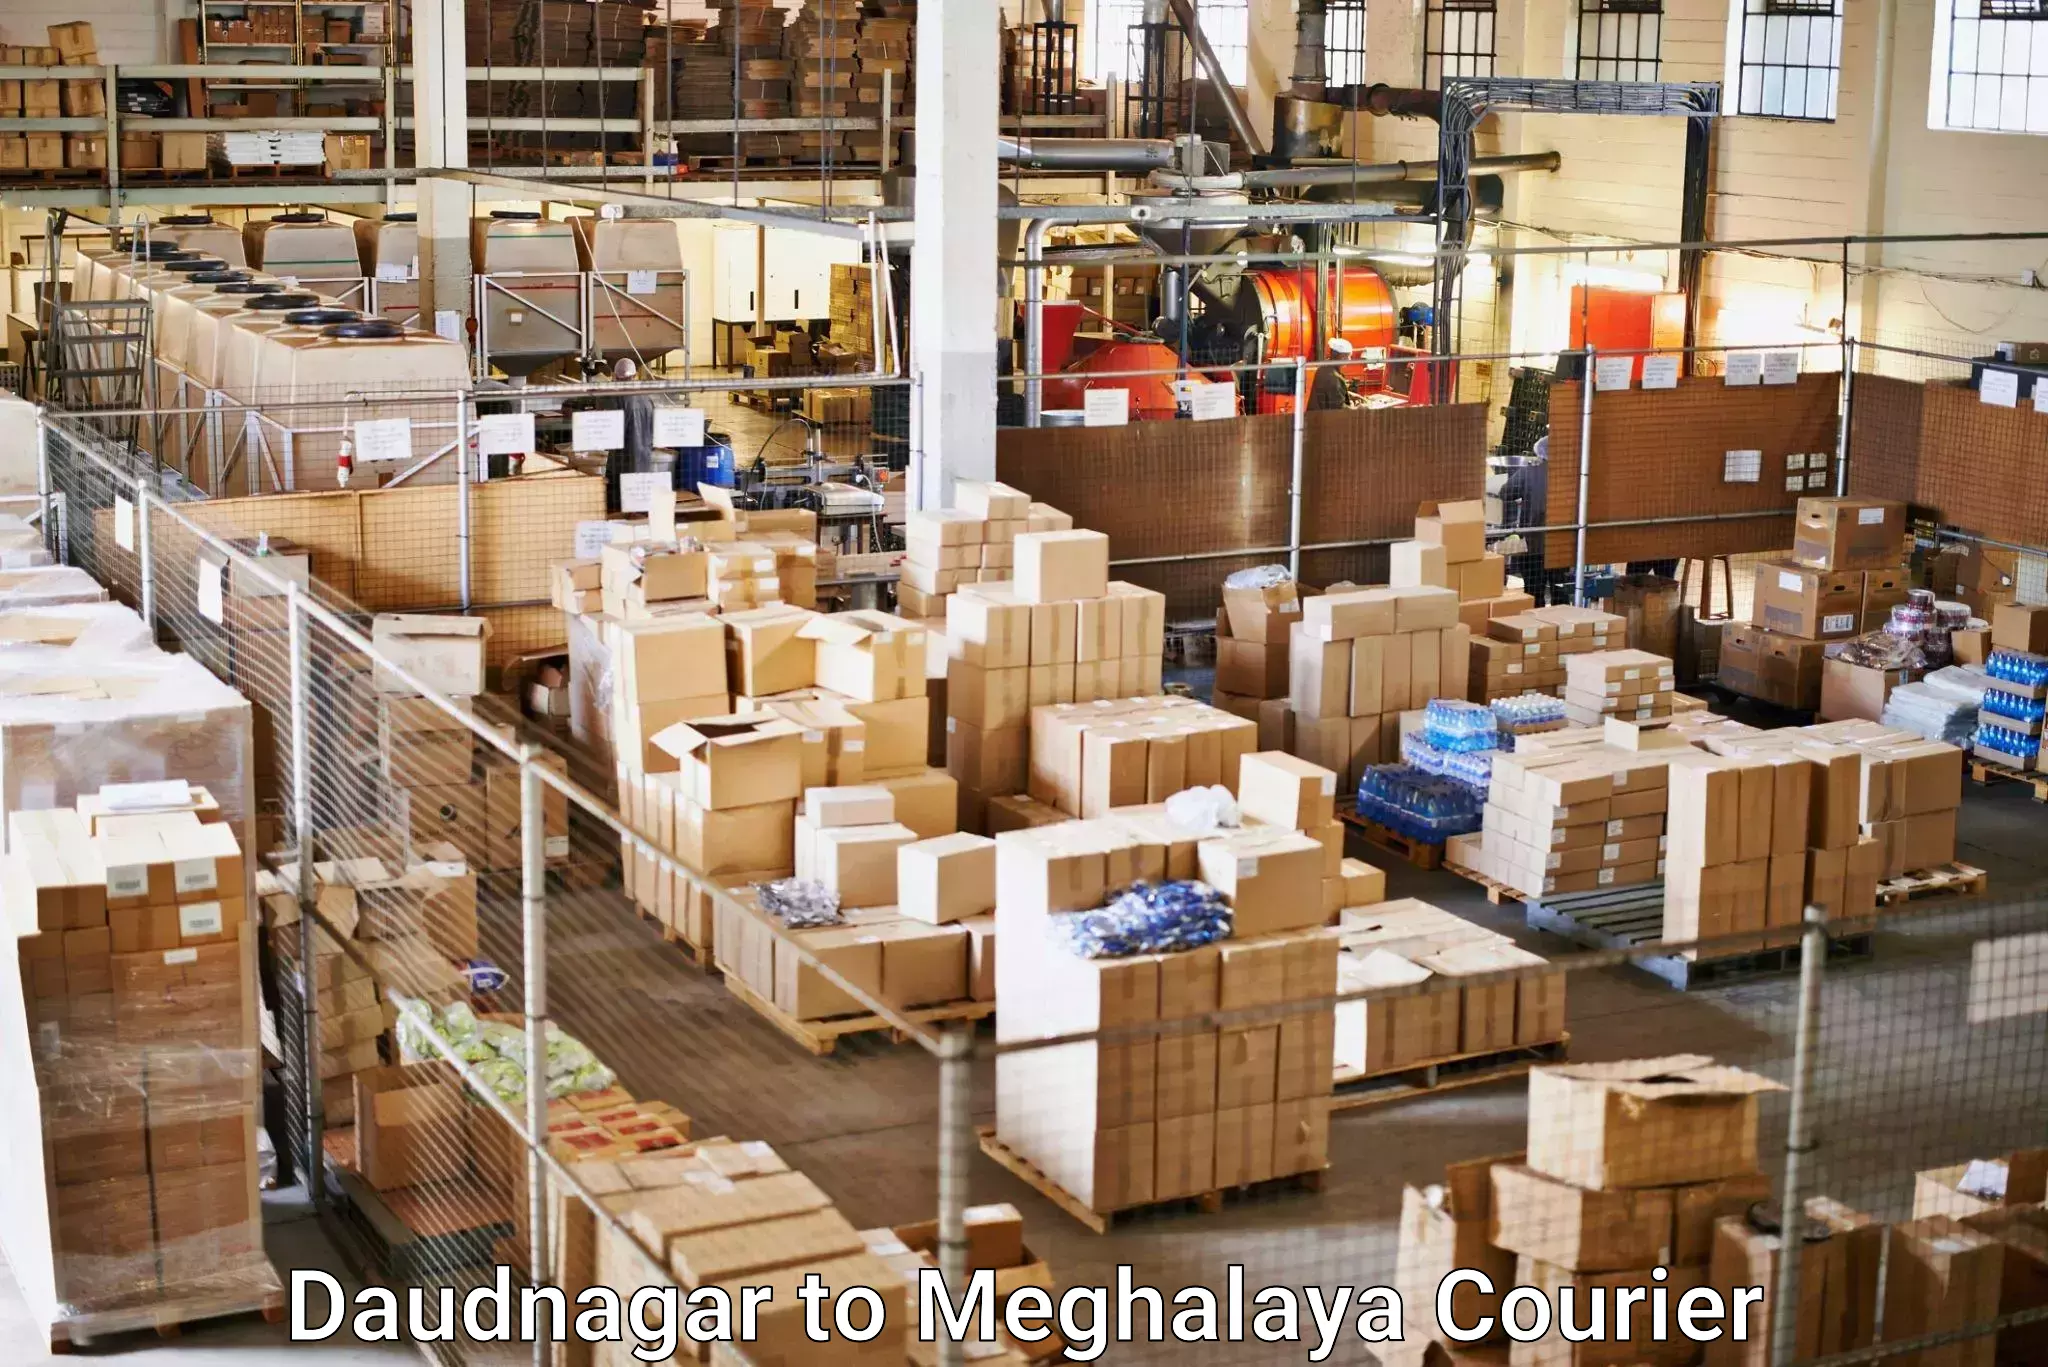 Customizable shipping options Daudnagar to Meghalaya